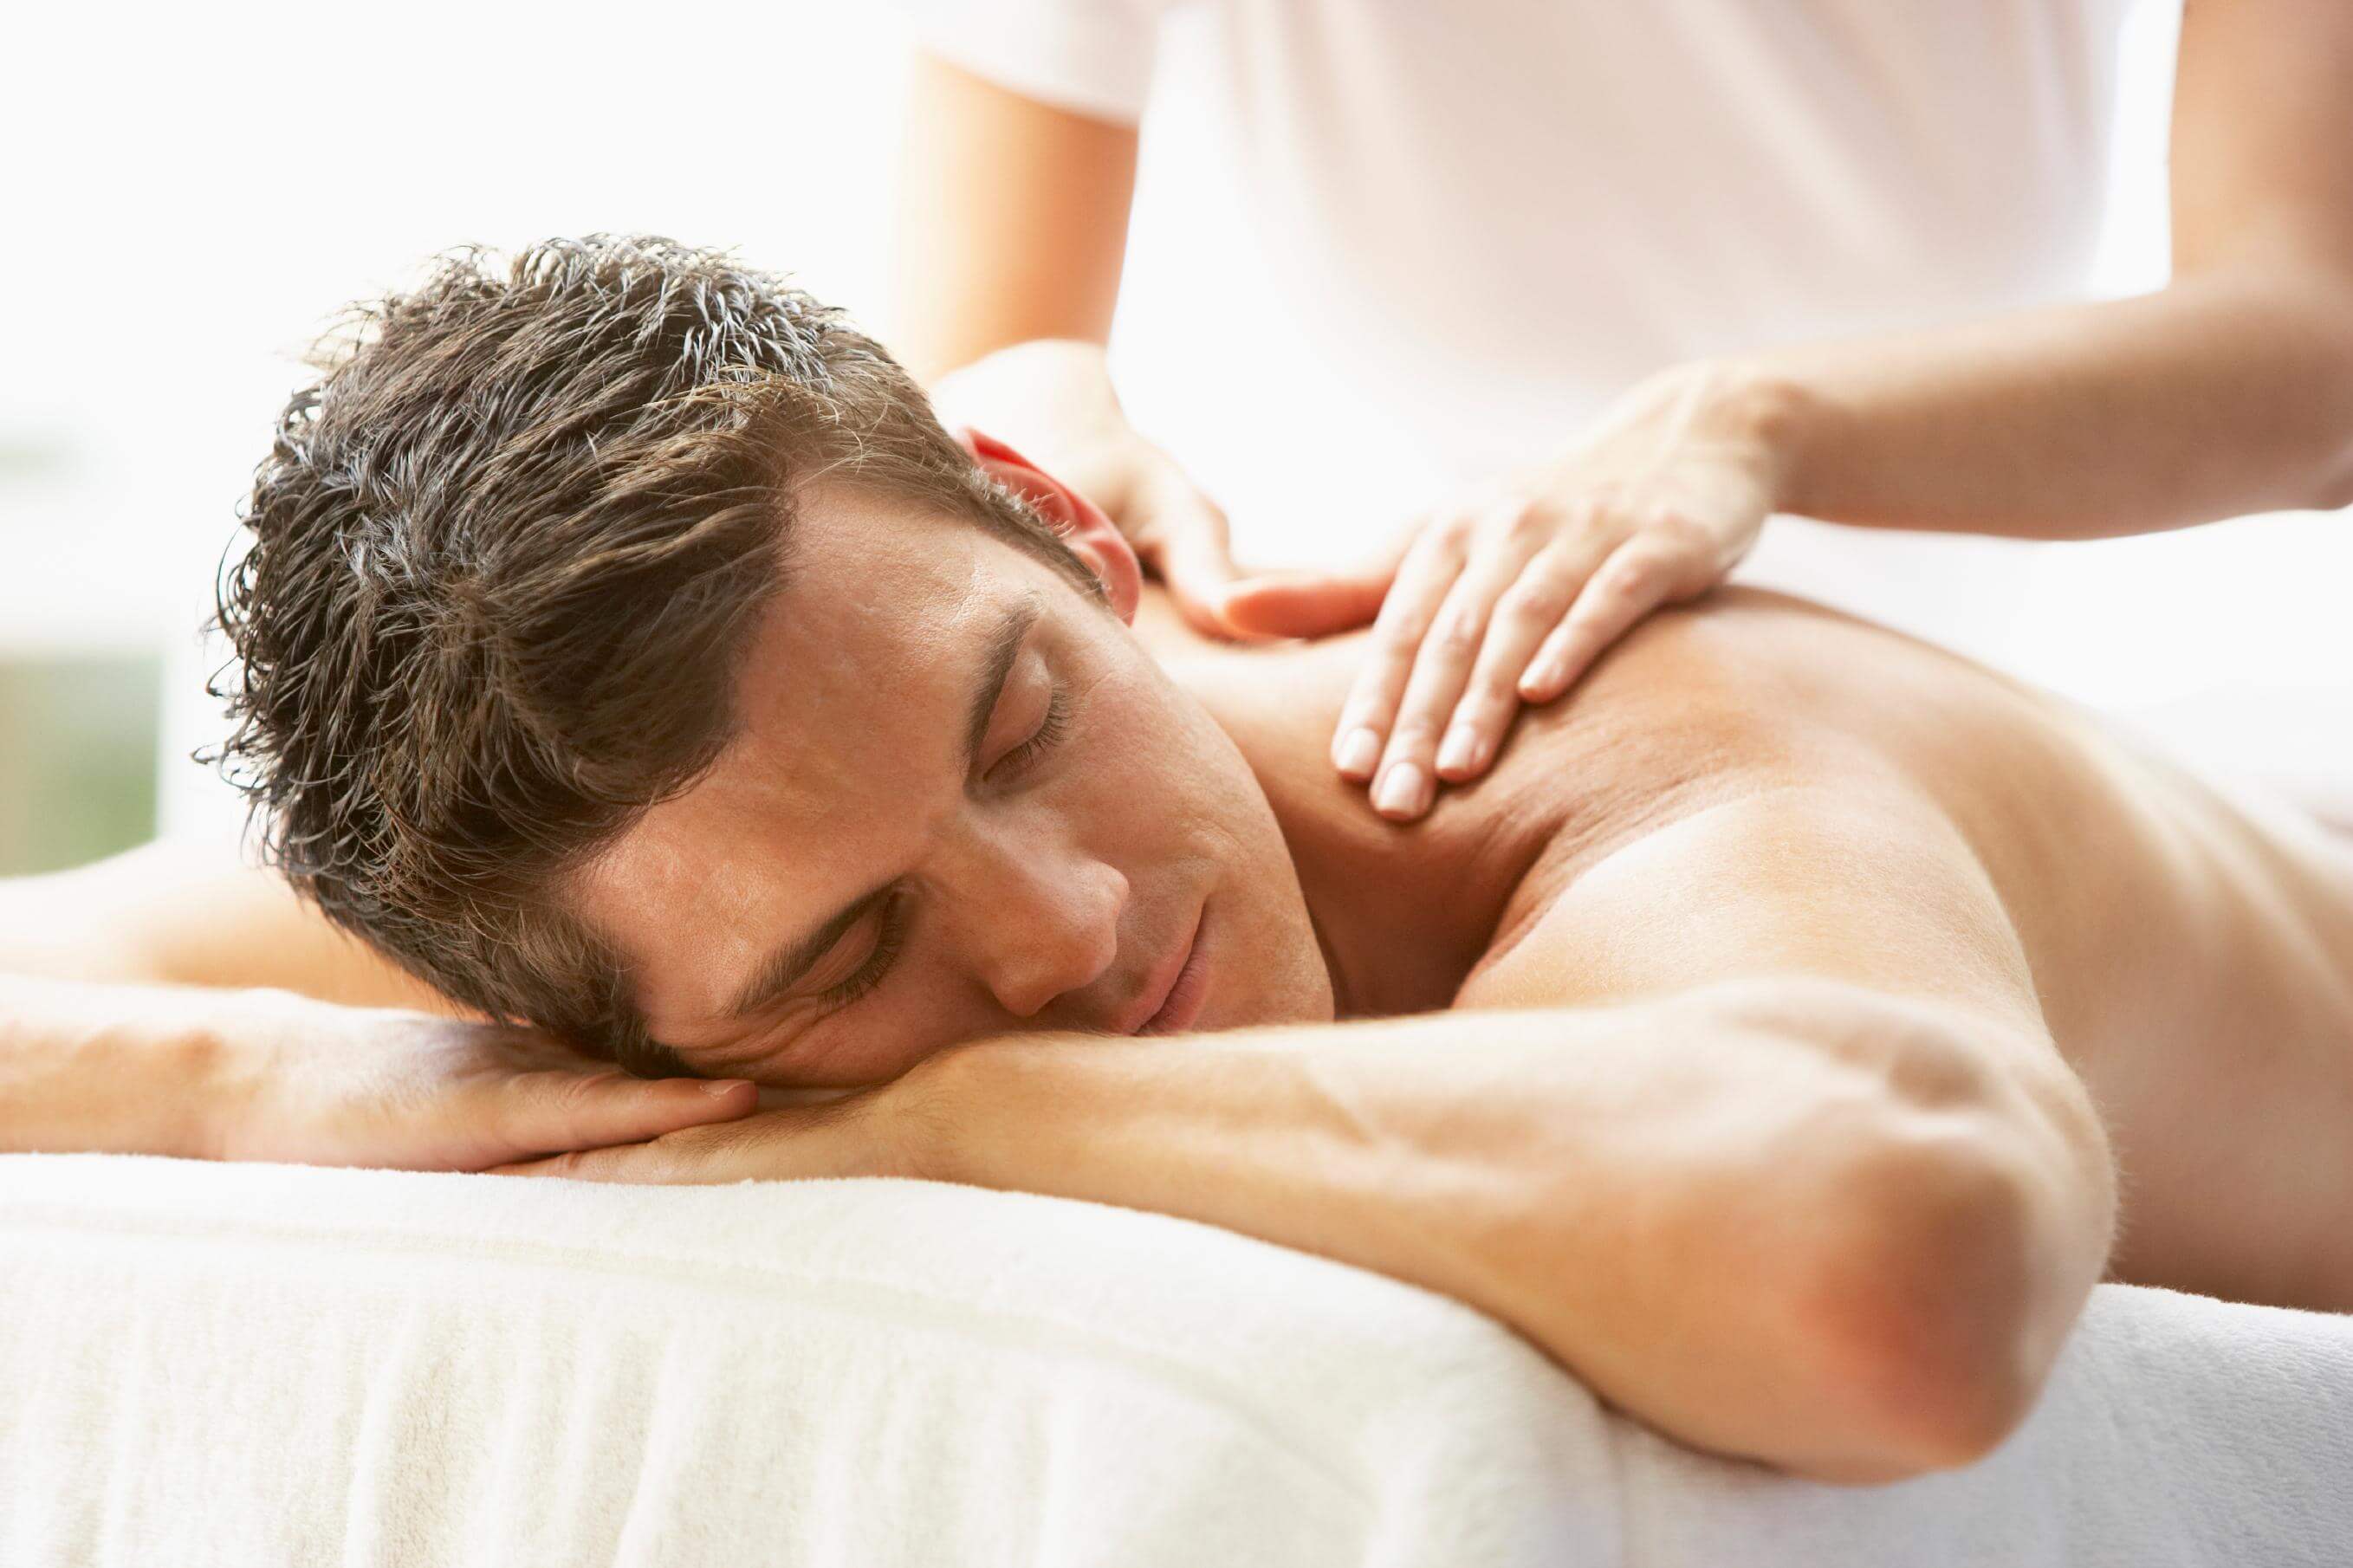 Massage therapist. Массаж картинки. Массаж спины мужчине. Поглаживание в массаже. Массаж мужской спины.